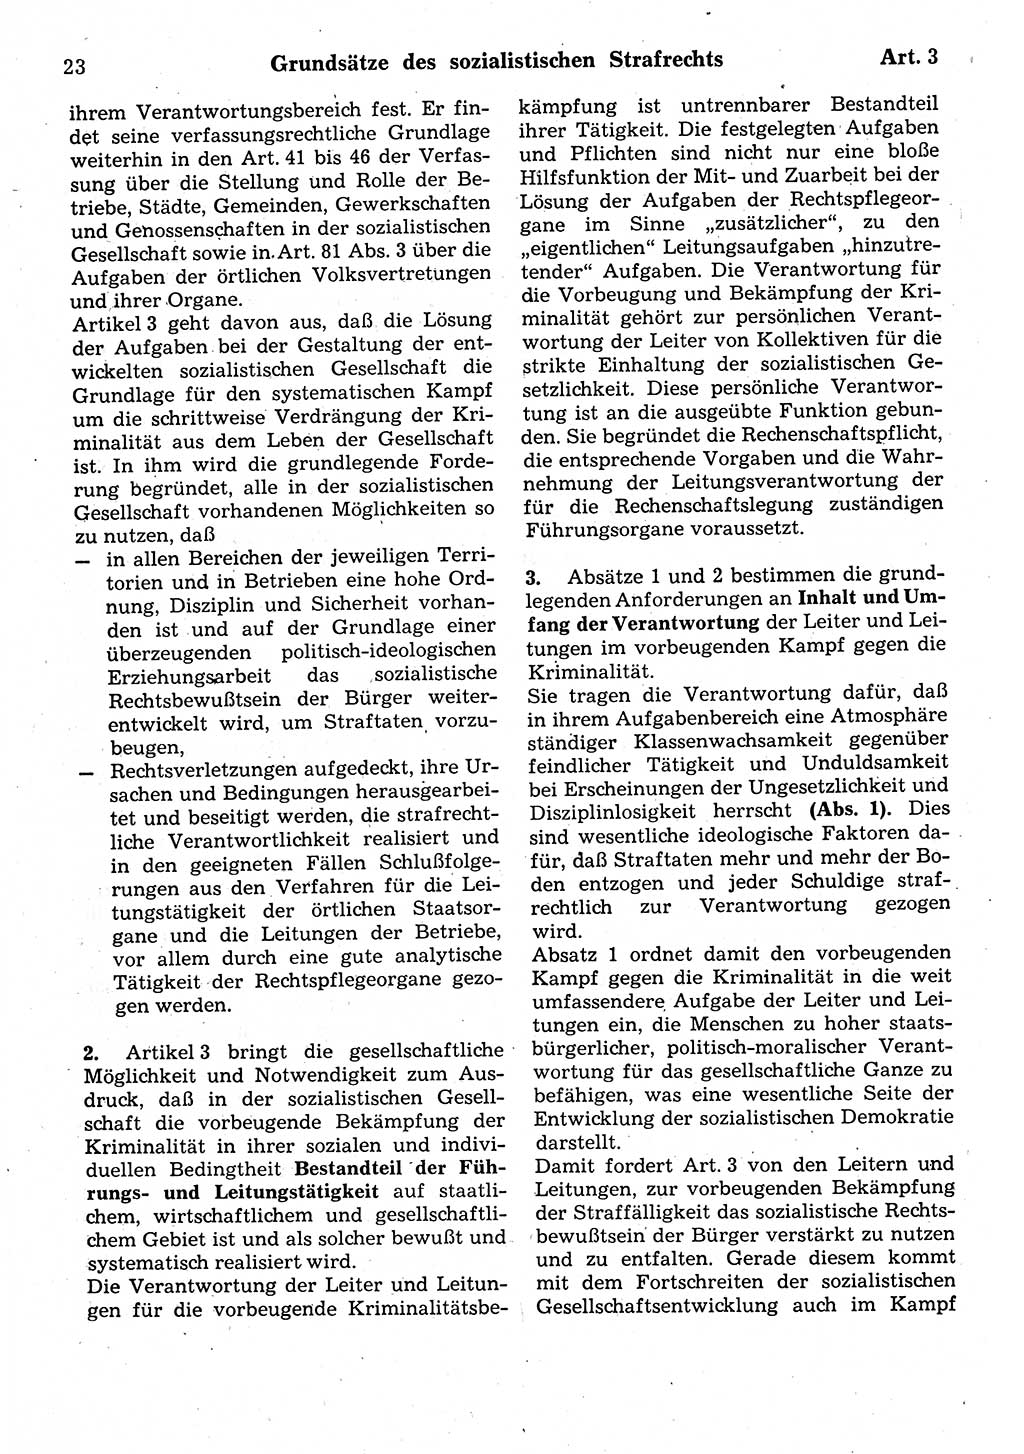 Strafrecht der Deutschen Demokratischen Republik (DDR), Kommentar zum Strafgesetzbuch (StGB) 1987, Seite 23 (Strafr. DDR Komm. StGB 1987, S. 23)